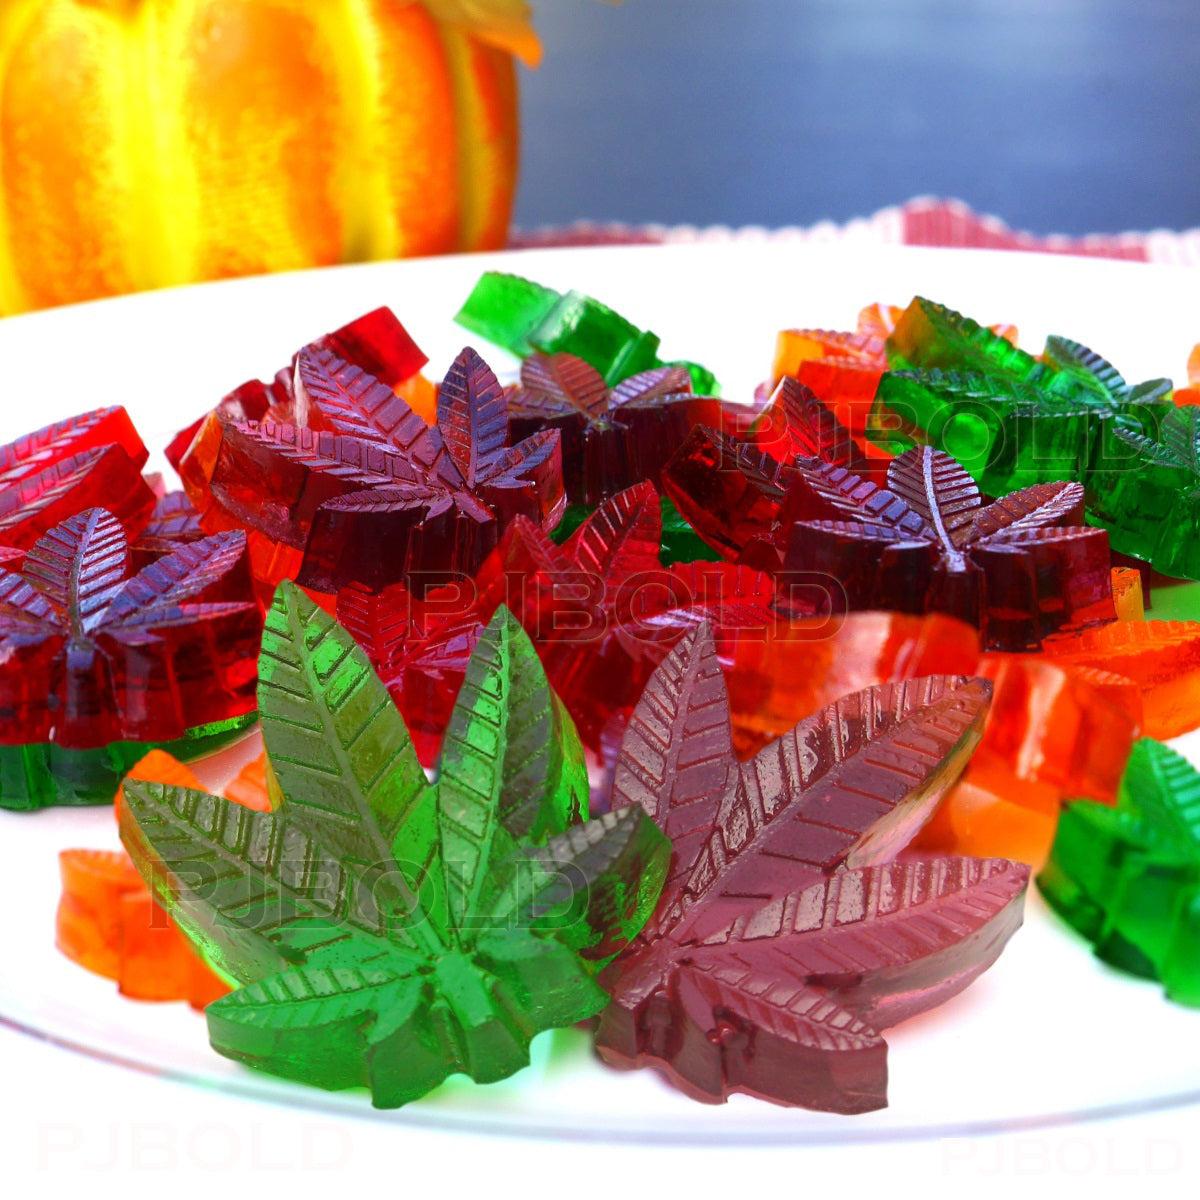 Marijuana Candy Mold 